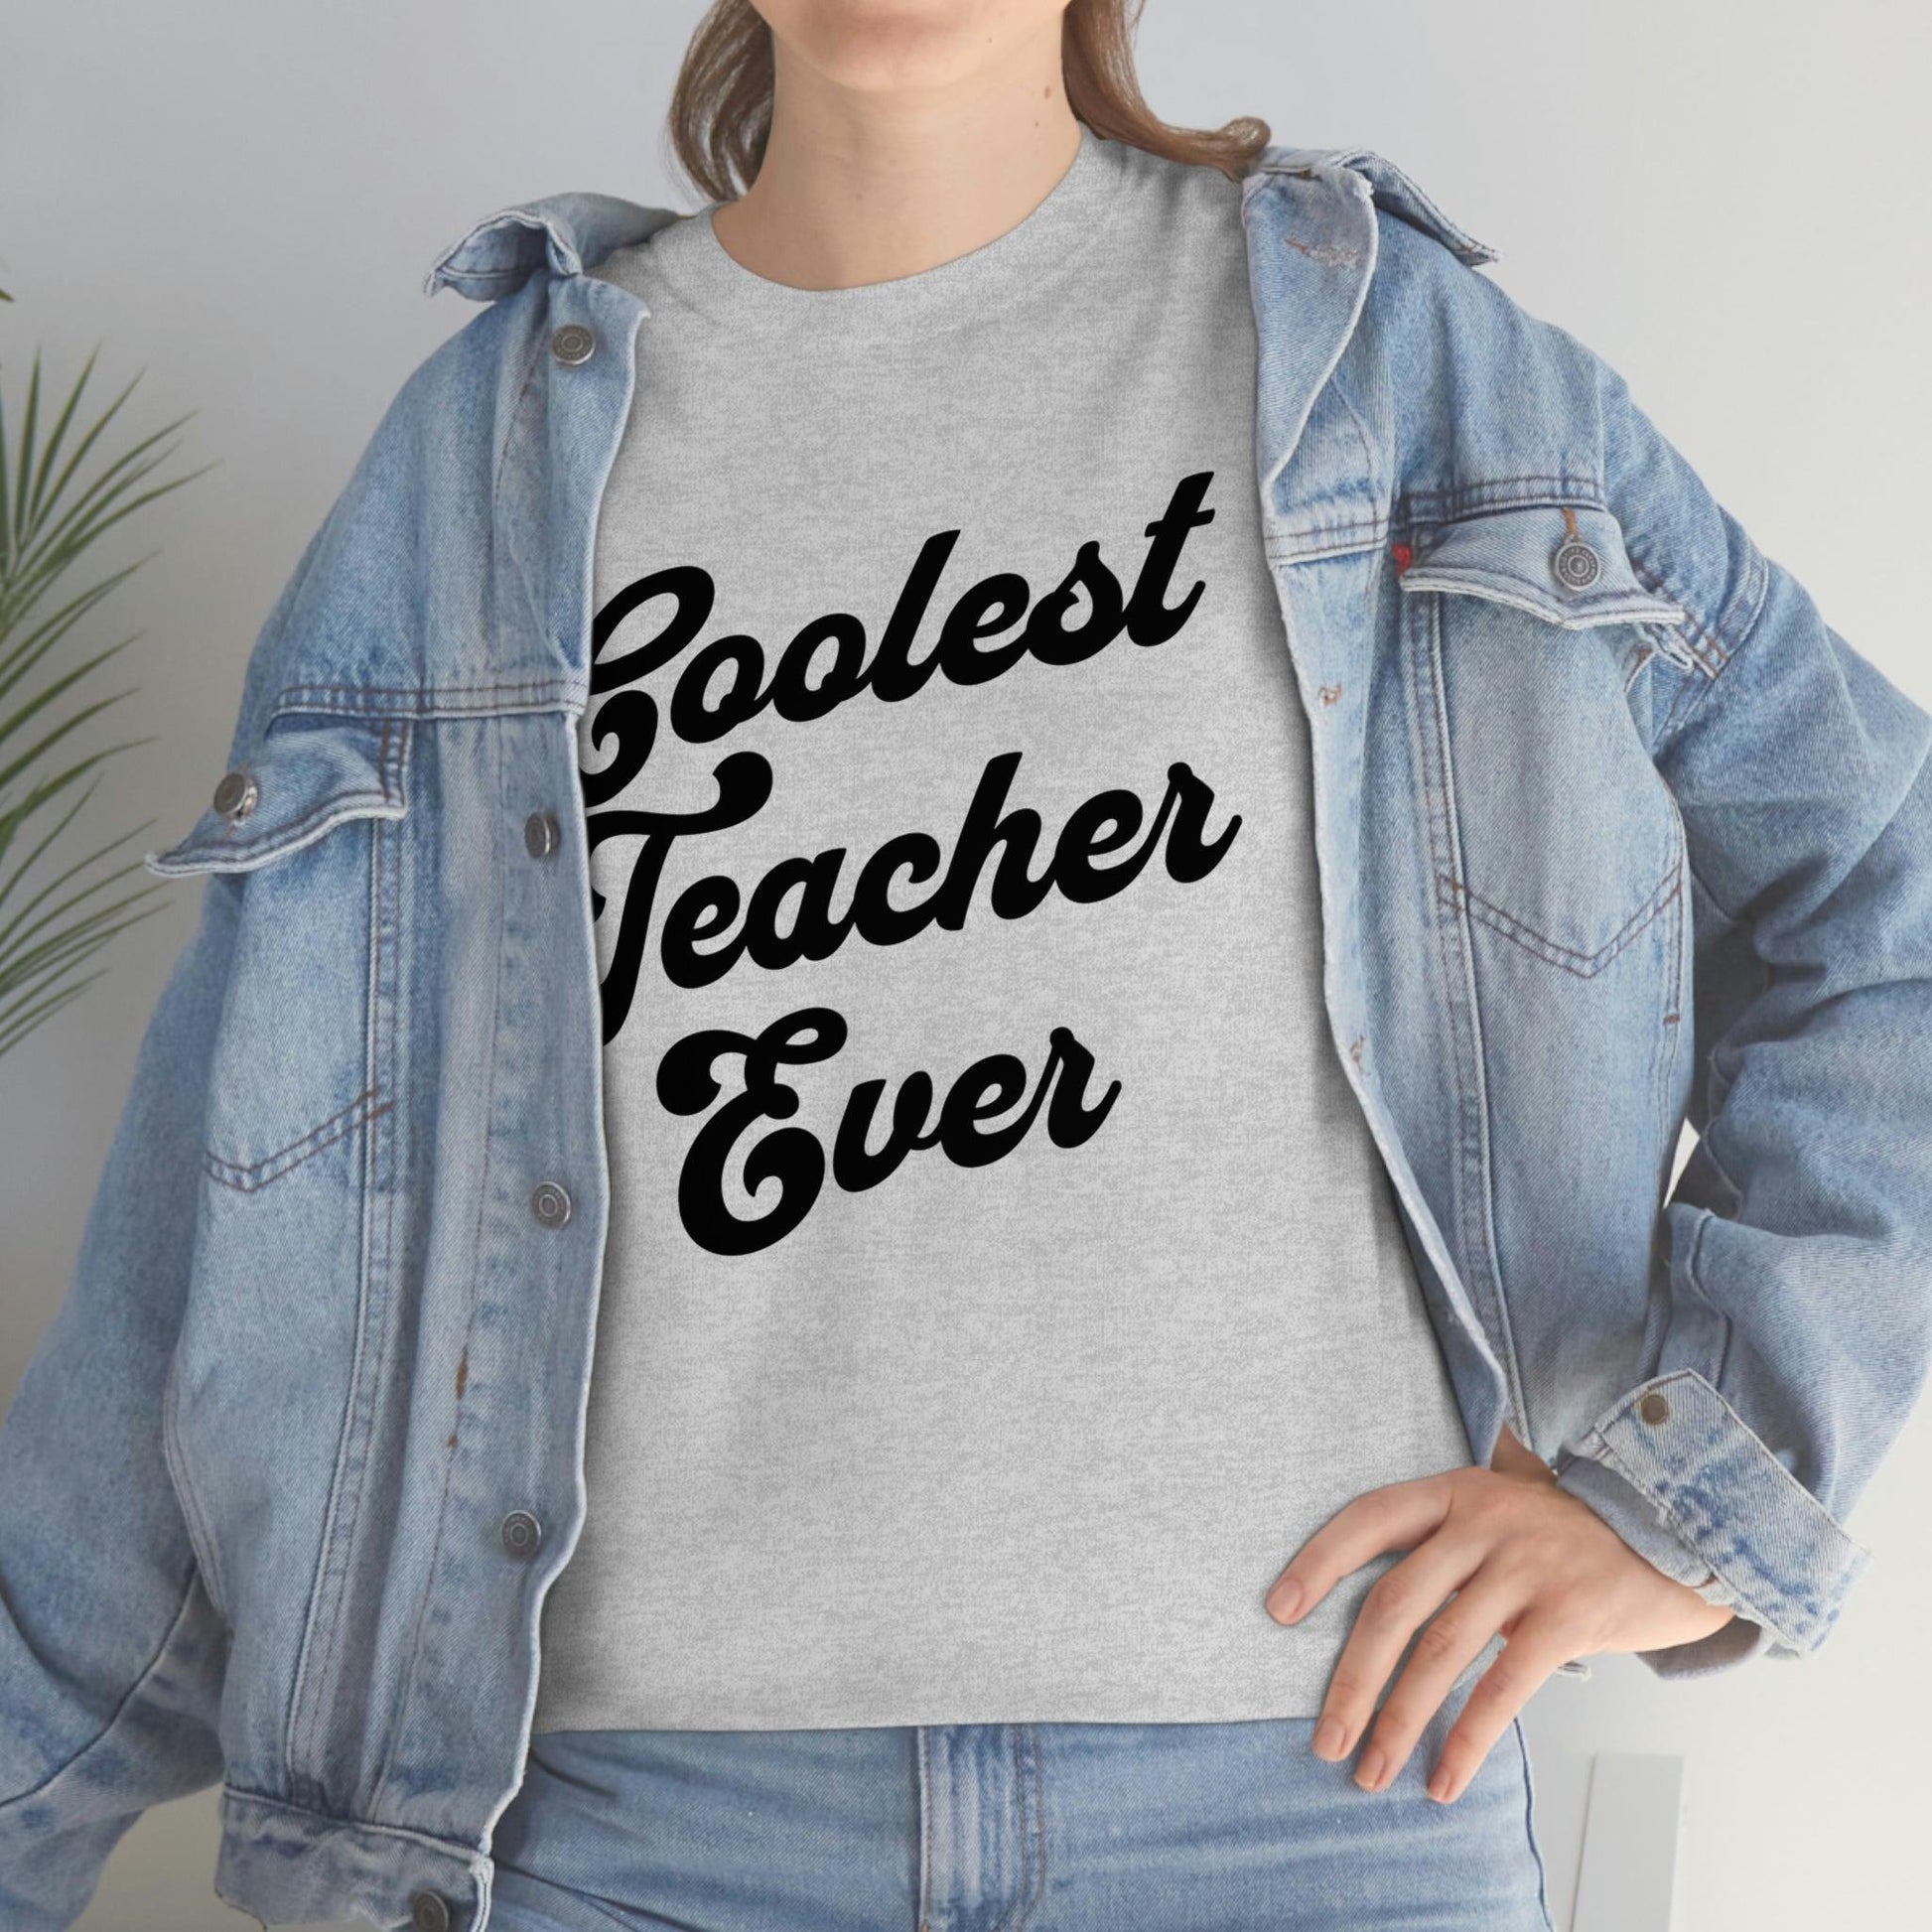 Coolest Teacher Ever Shirt - Giftsmojo